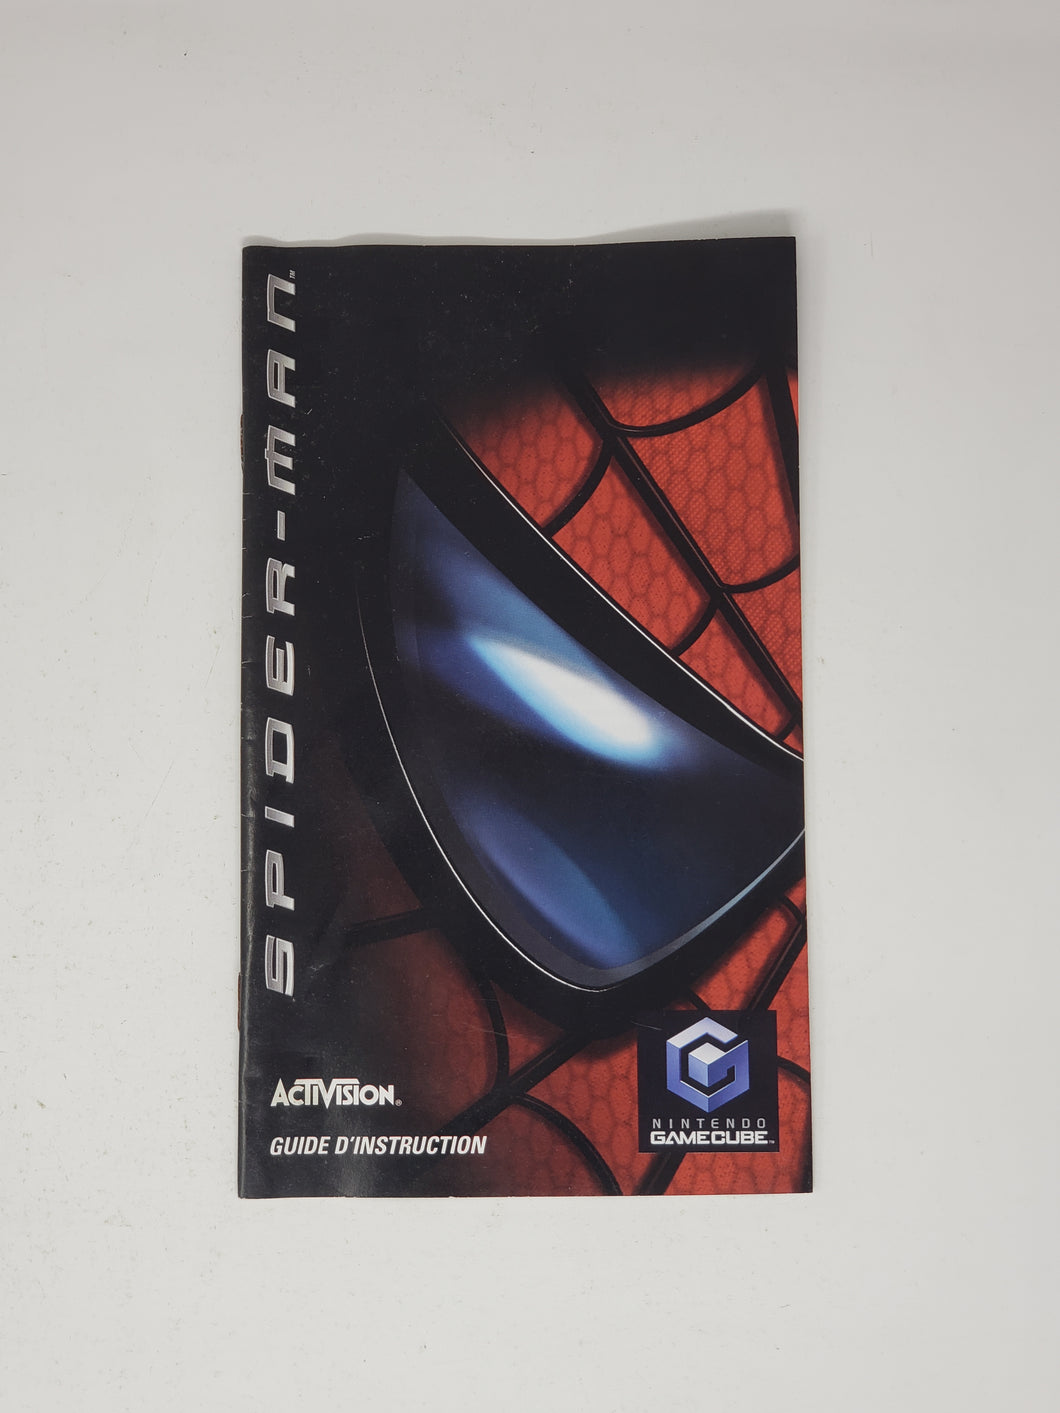 Spiderman [manuel] - Nintendo GameCube